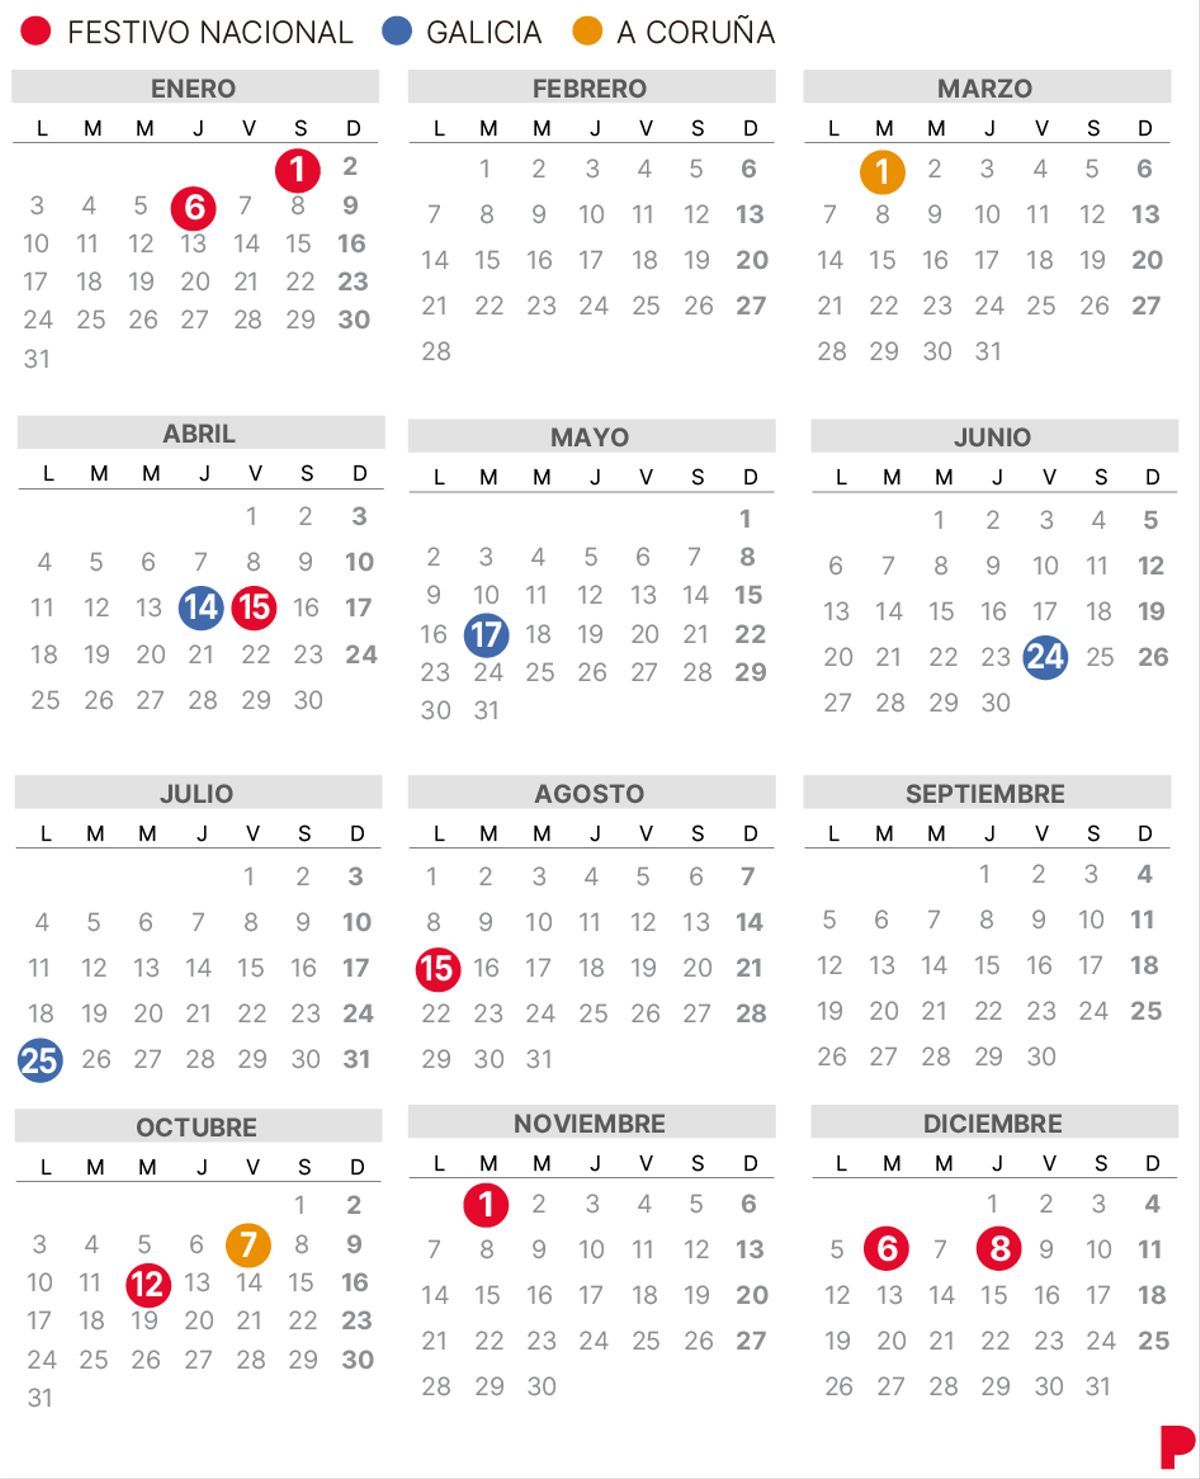 Calendario laboral de A Coruña para 2022.